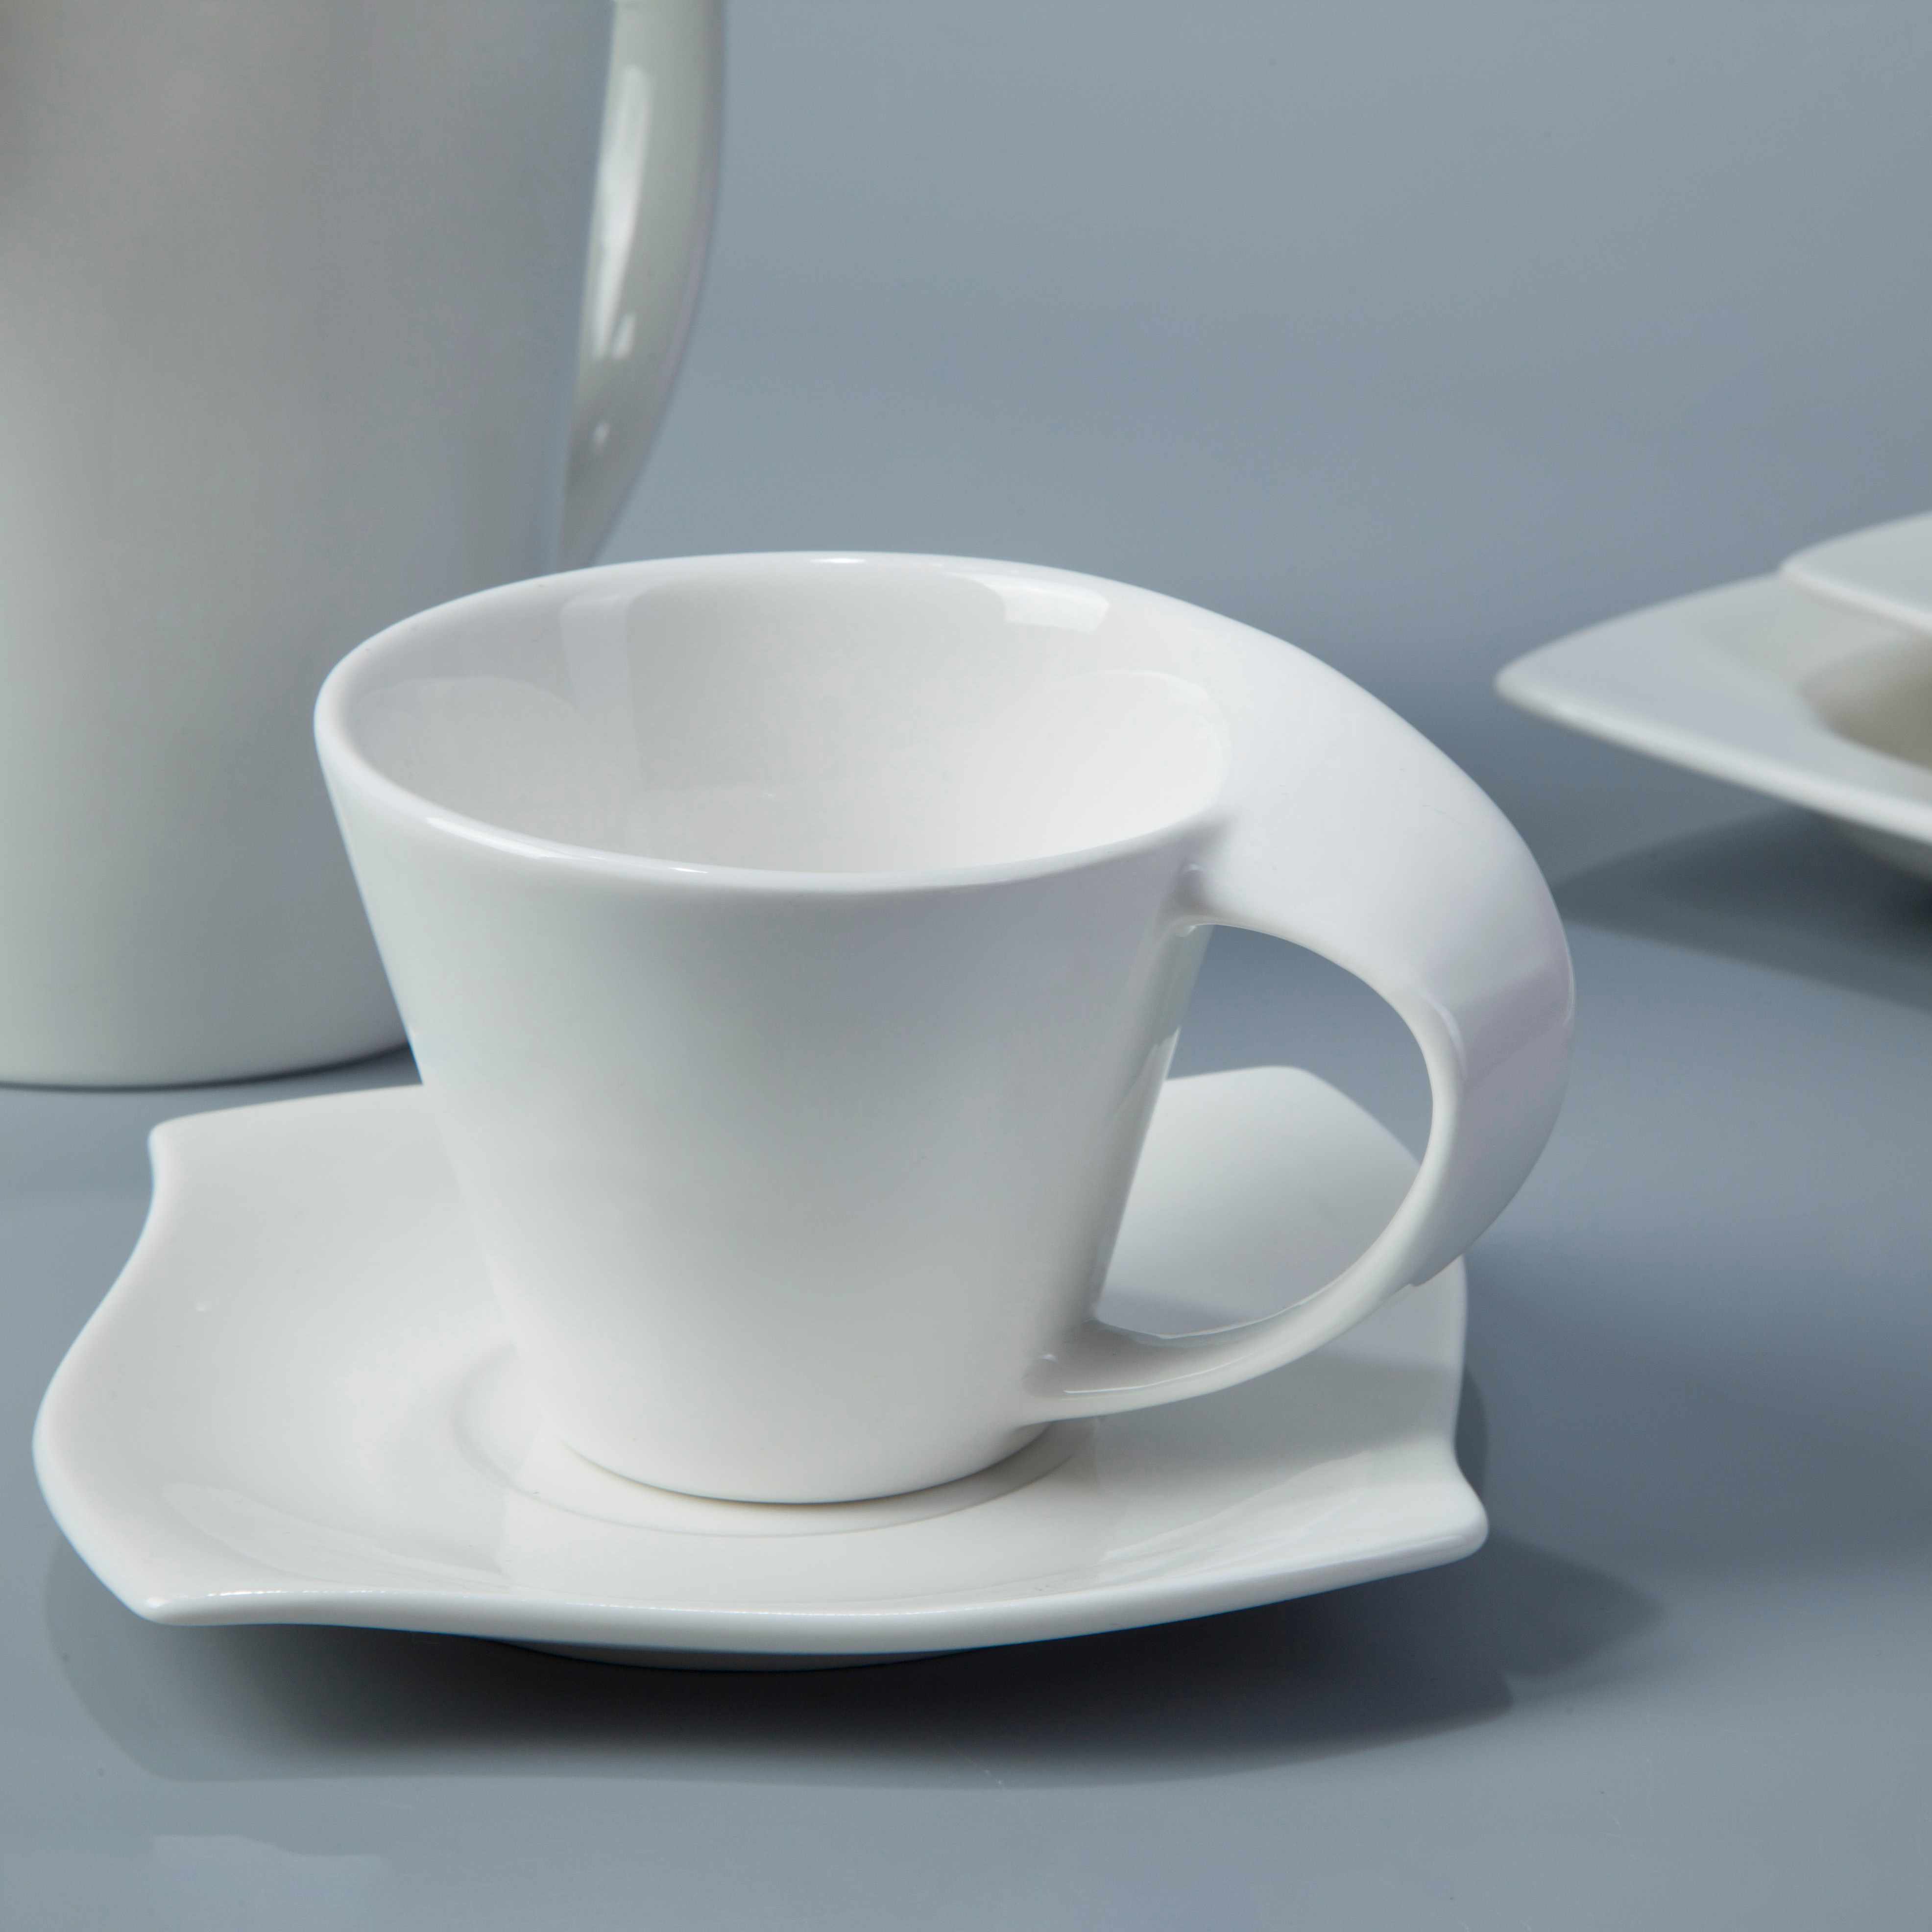 Two Eight-Best White Porcelain Dinnerware Restaurant Contemporary White Porcelain